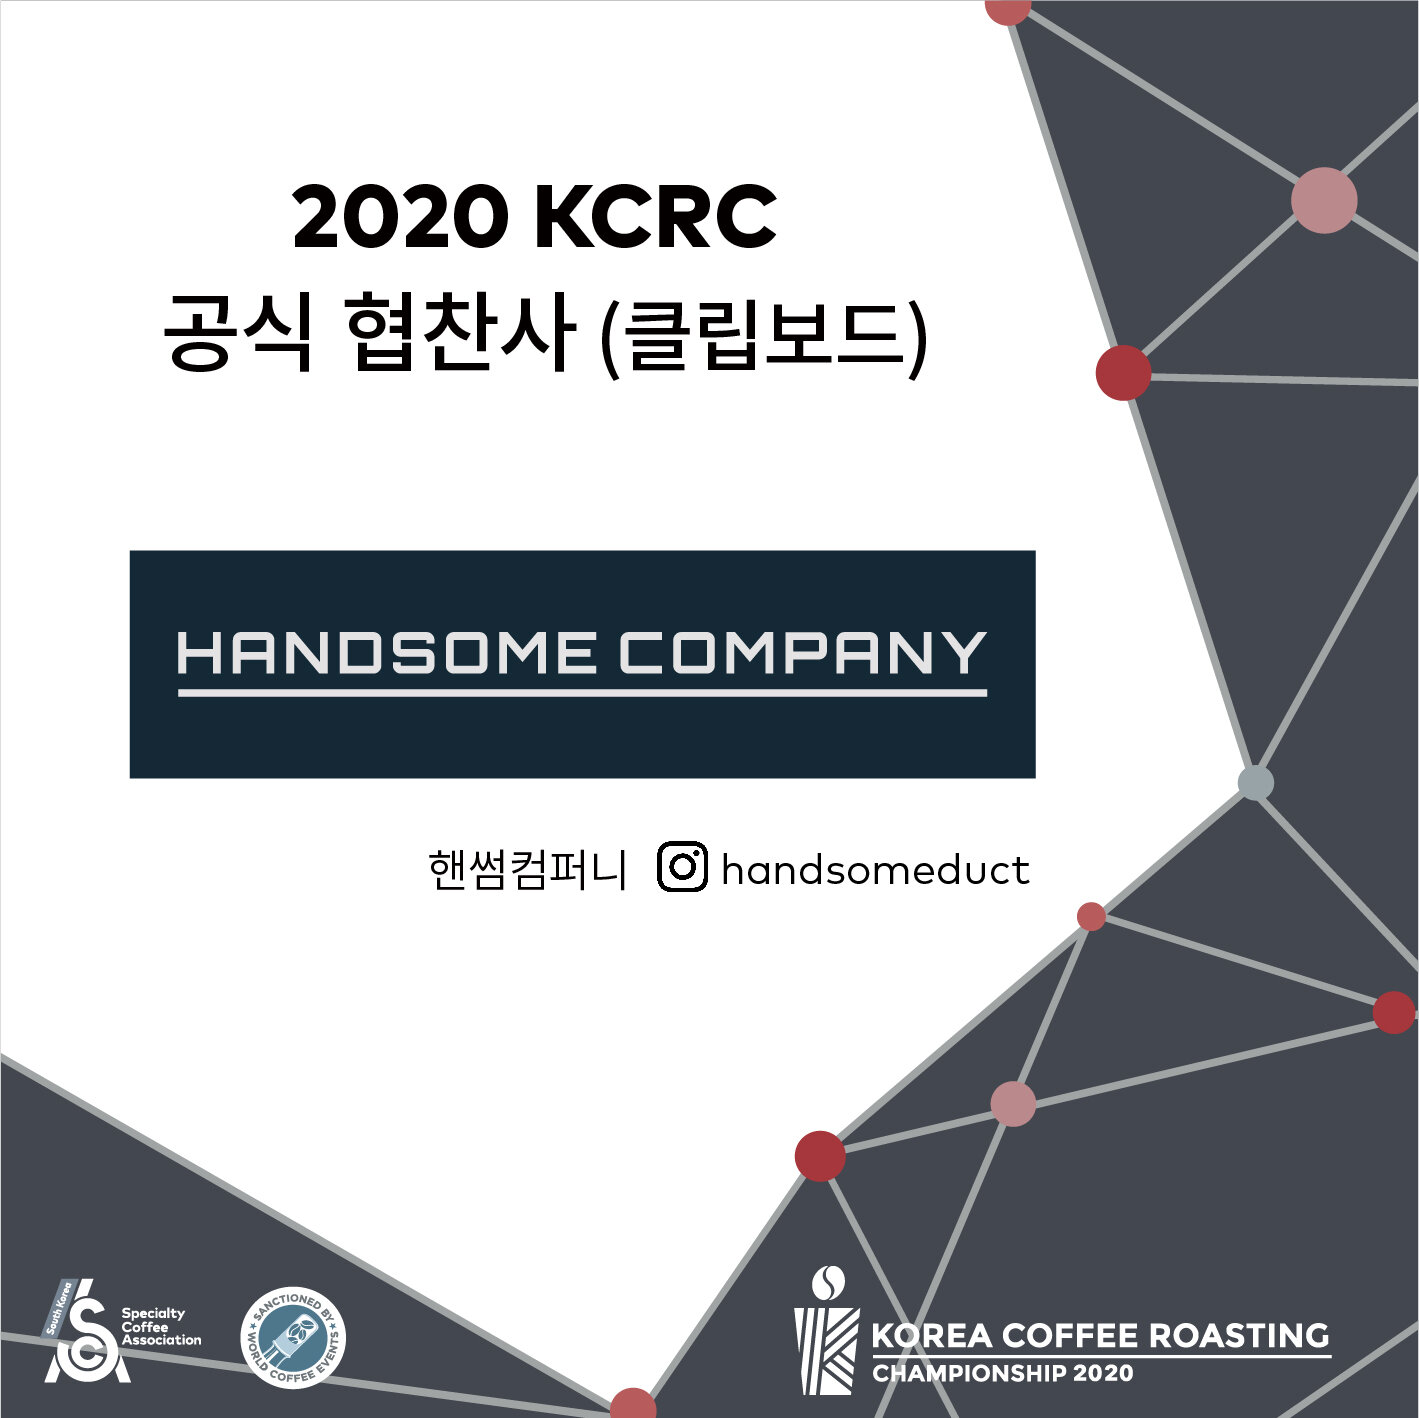 2020 KCRC_공식 협찬사_클립보드.jpg